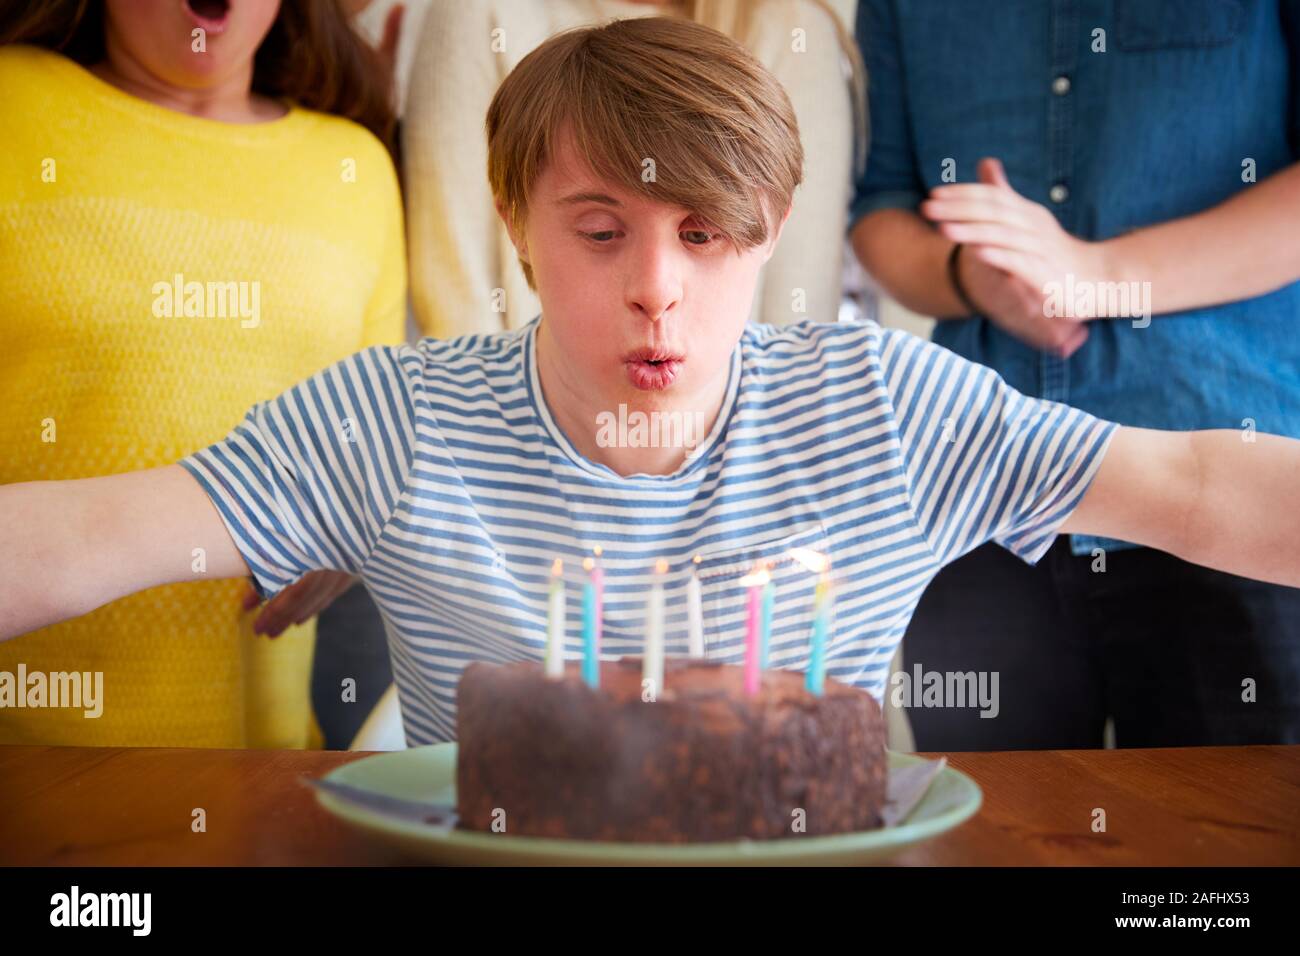 Junge Abstiegsyndrom Mann feiert Geburtstag zu Hause mit Kuchen Stockfoto